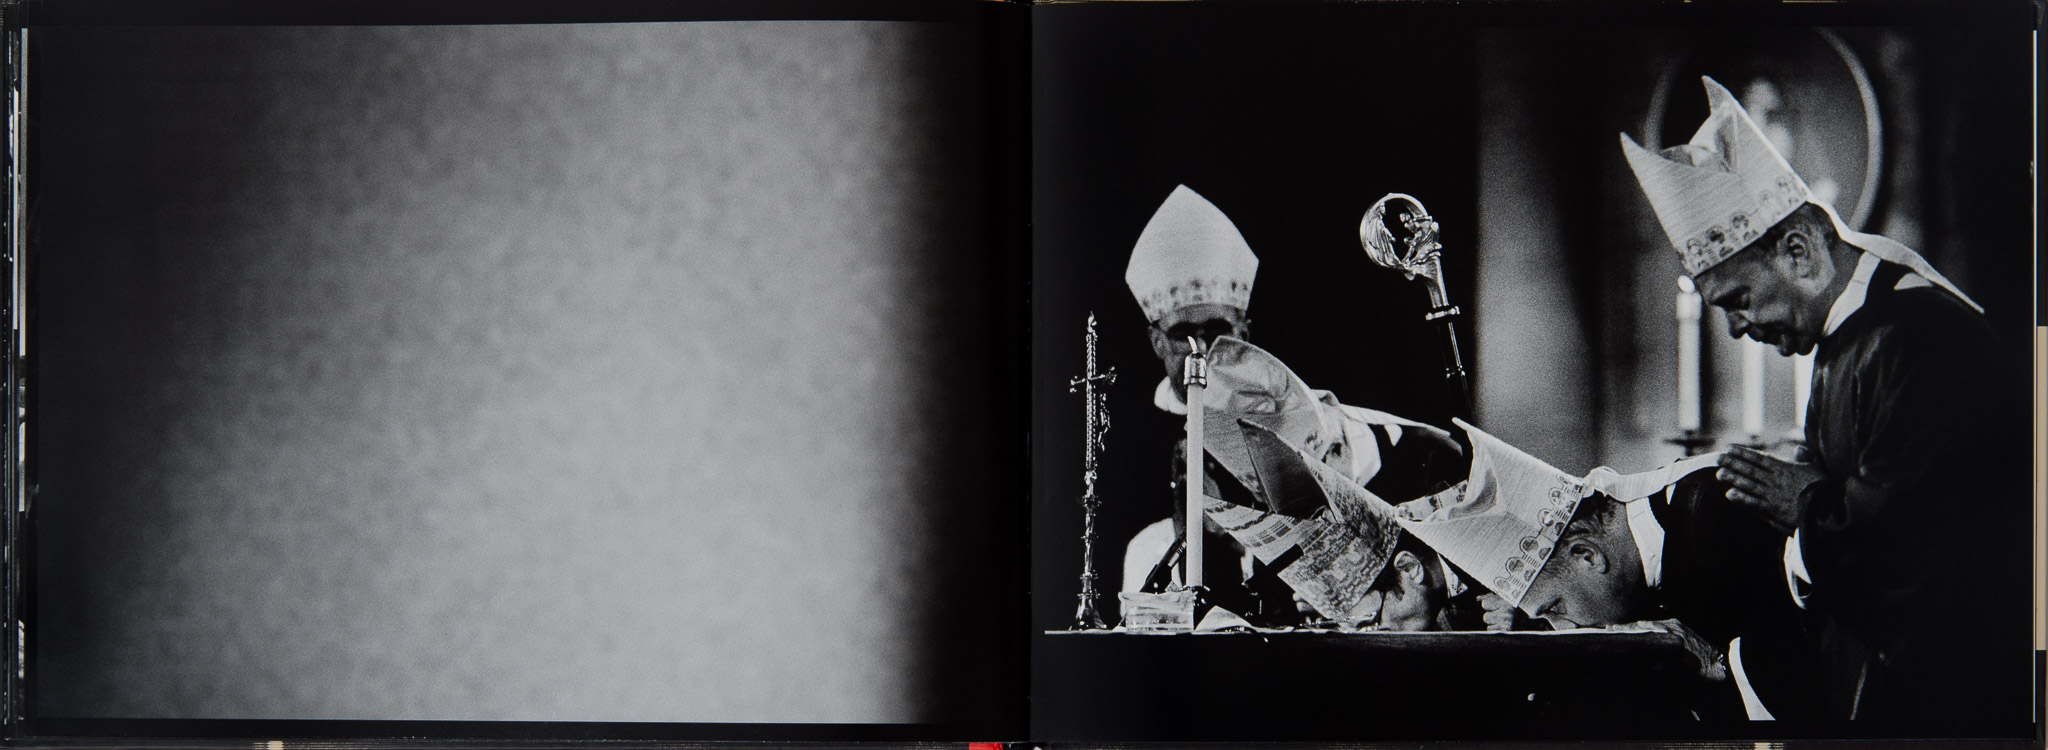 Der Altarkuss - Fotobuch über die katholischen Rituale im Erzbistum Köln